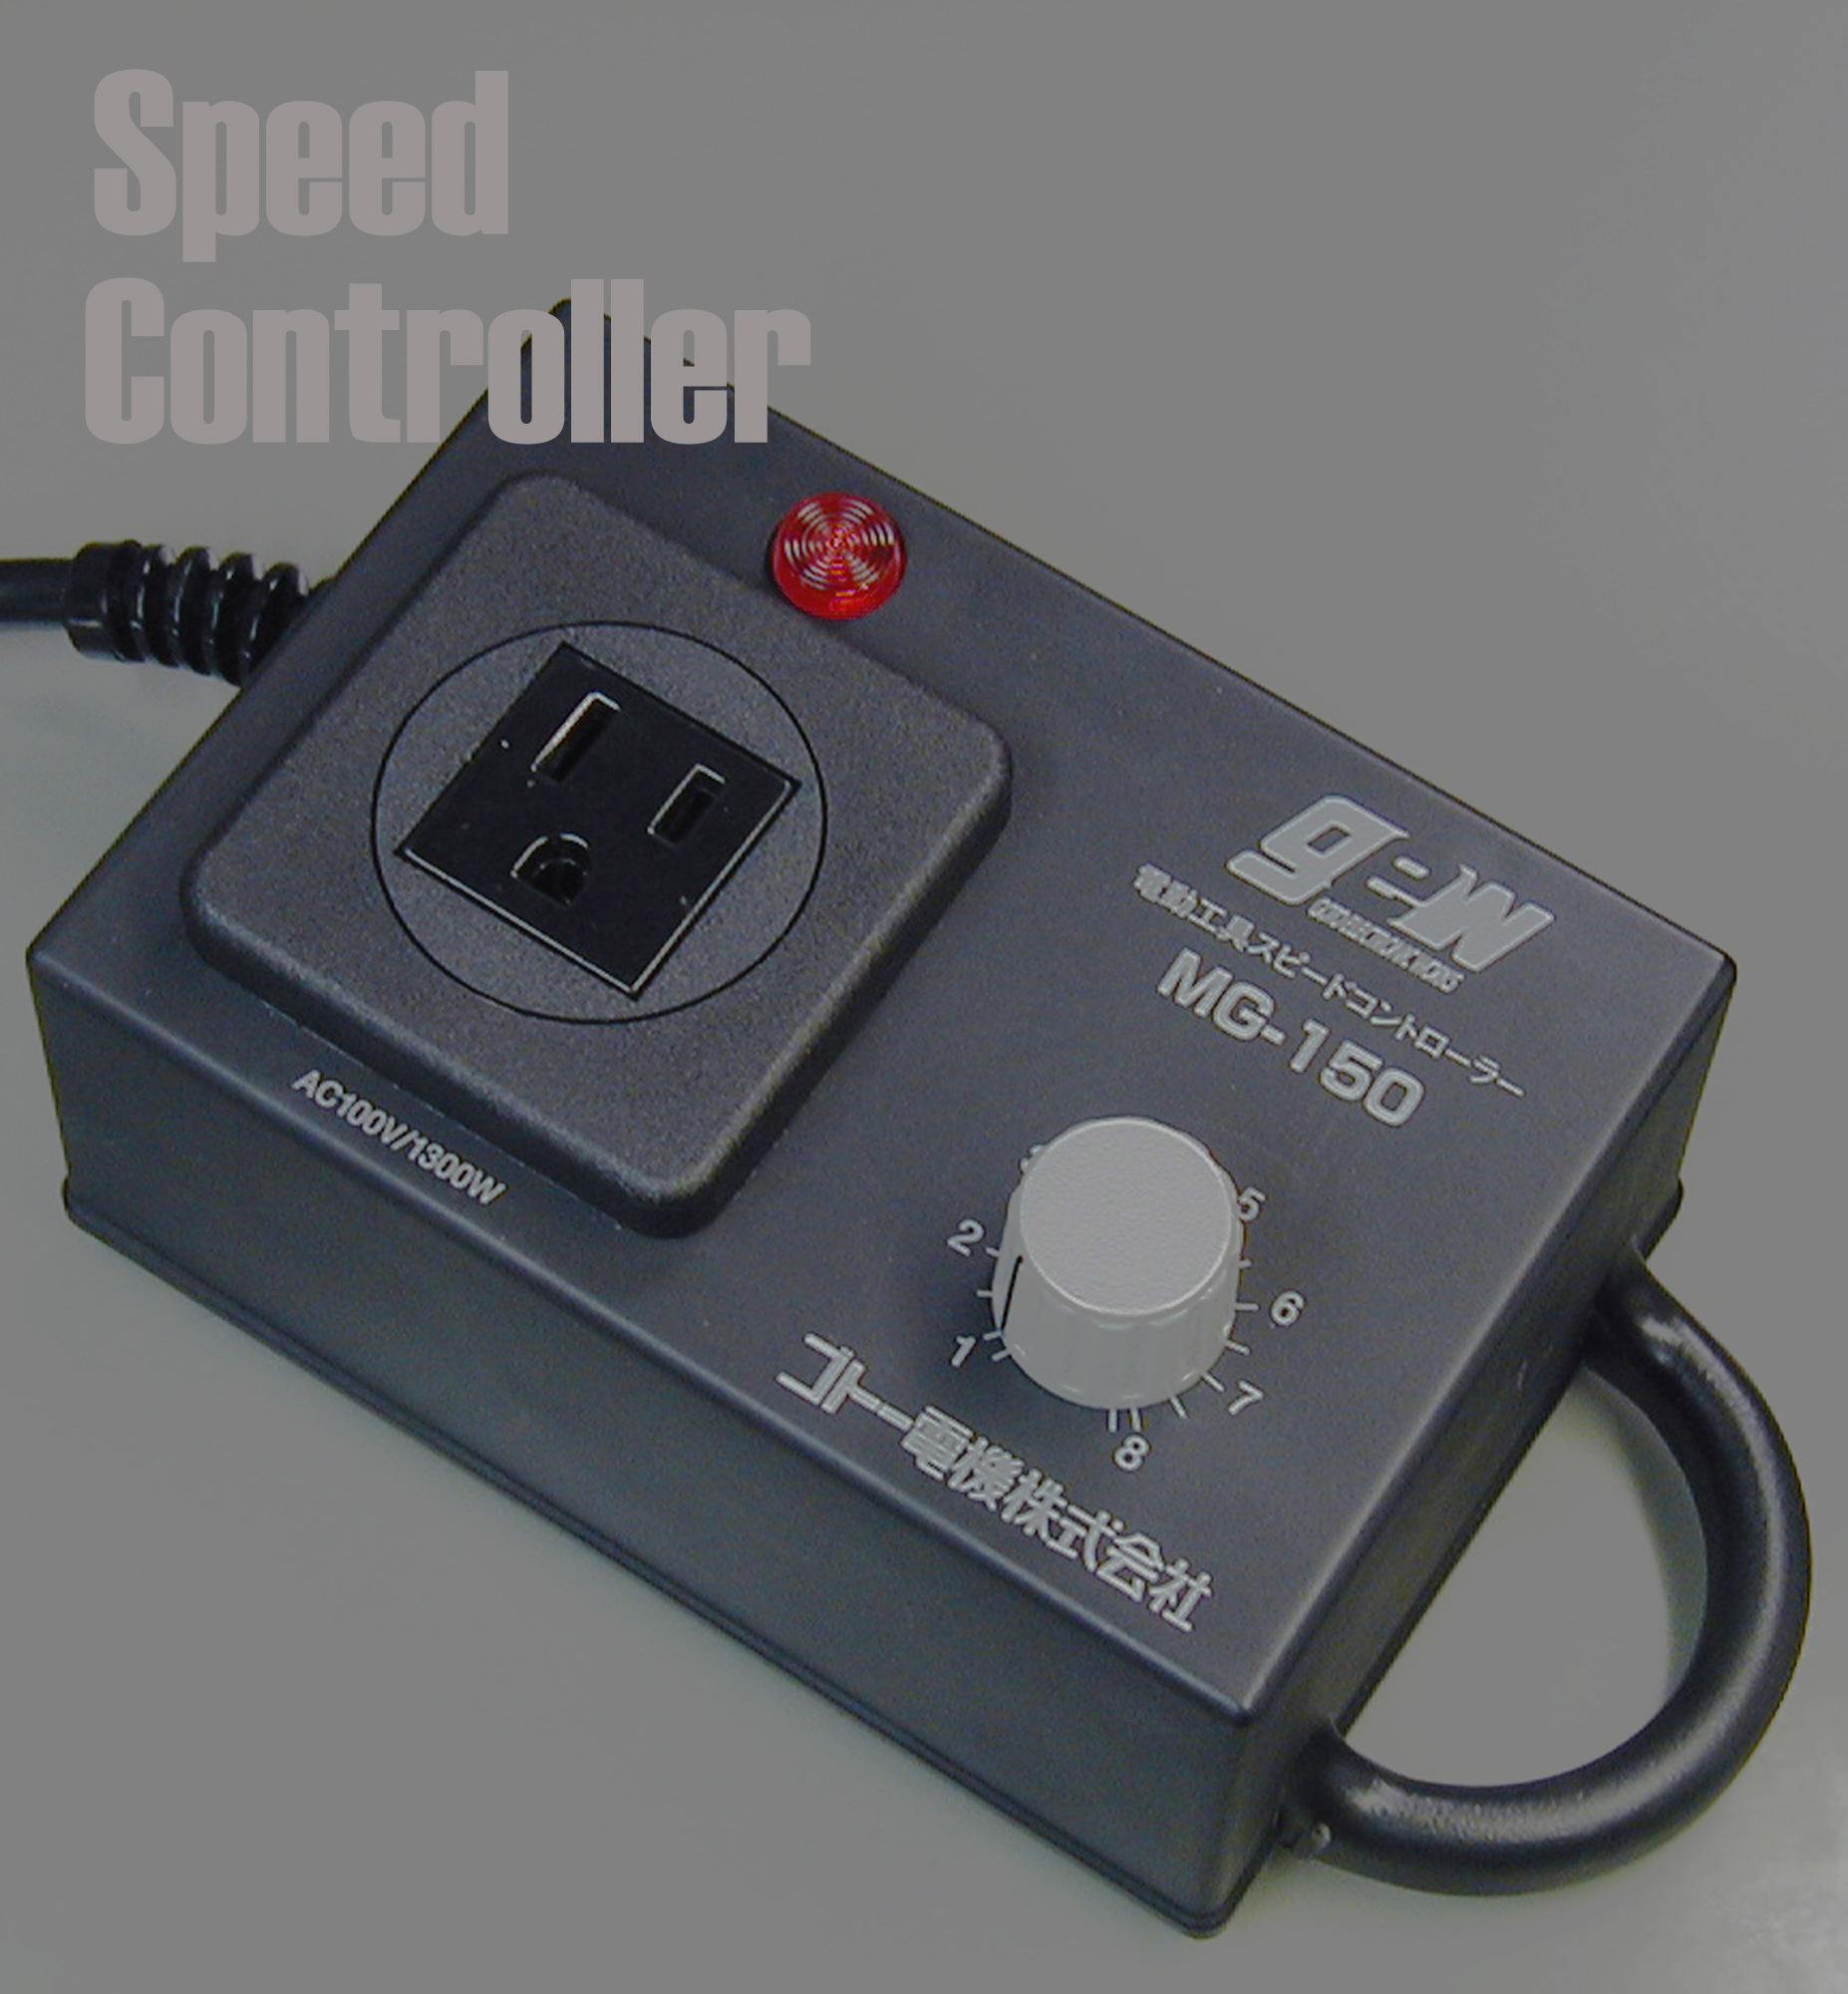 スピードコントローラー – G-TOOL【ジーツール】株式会社